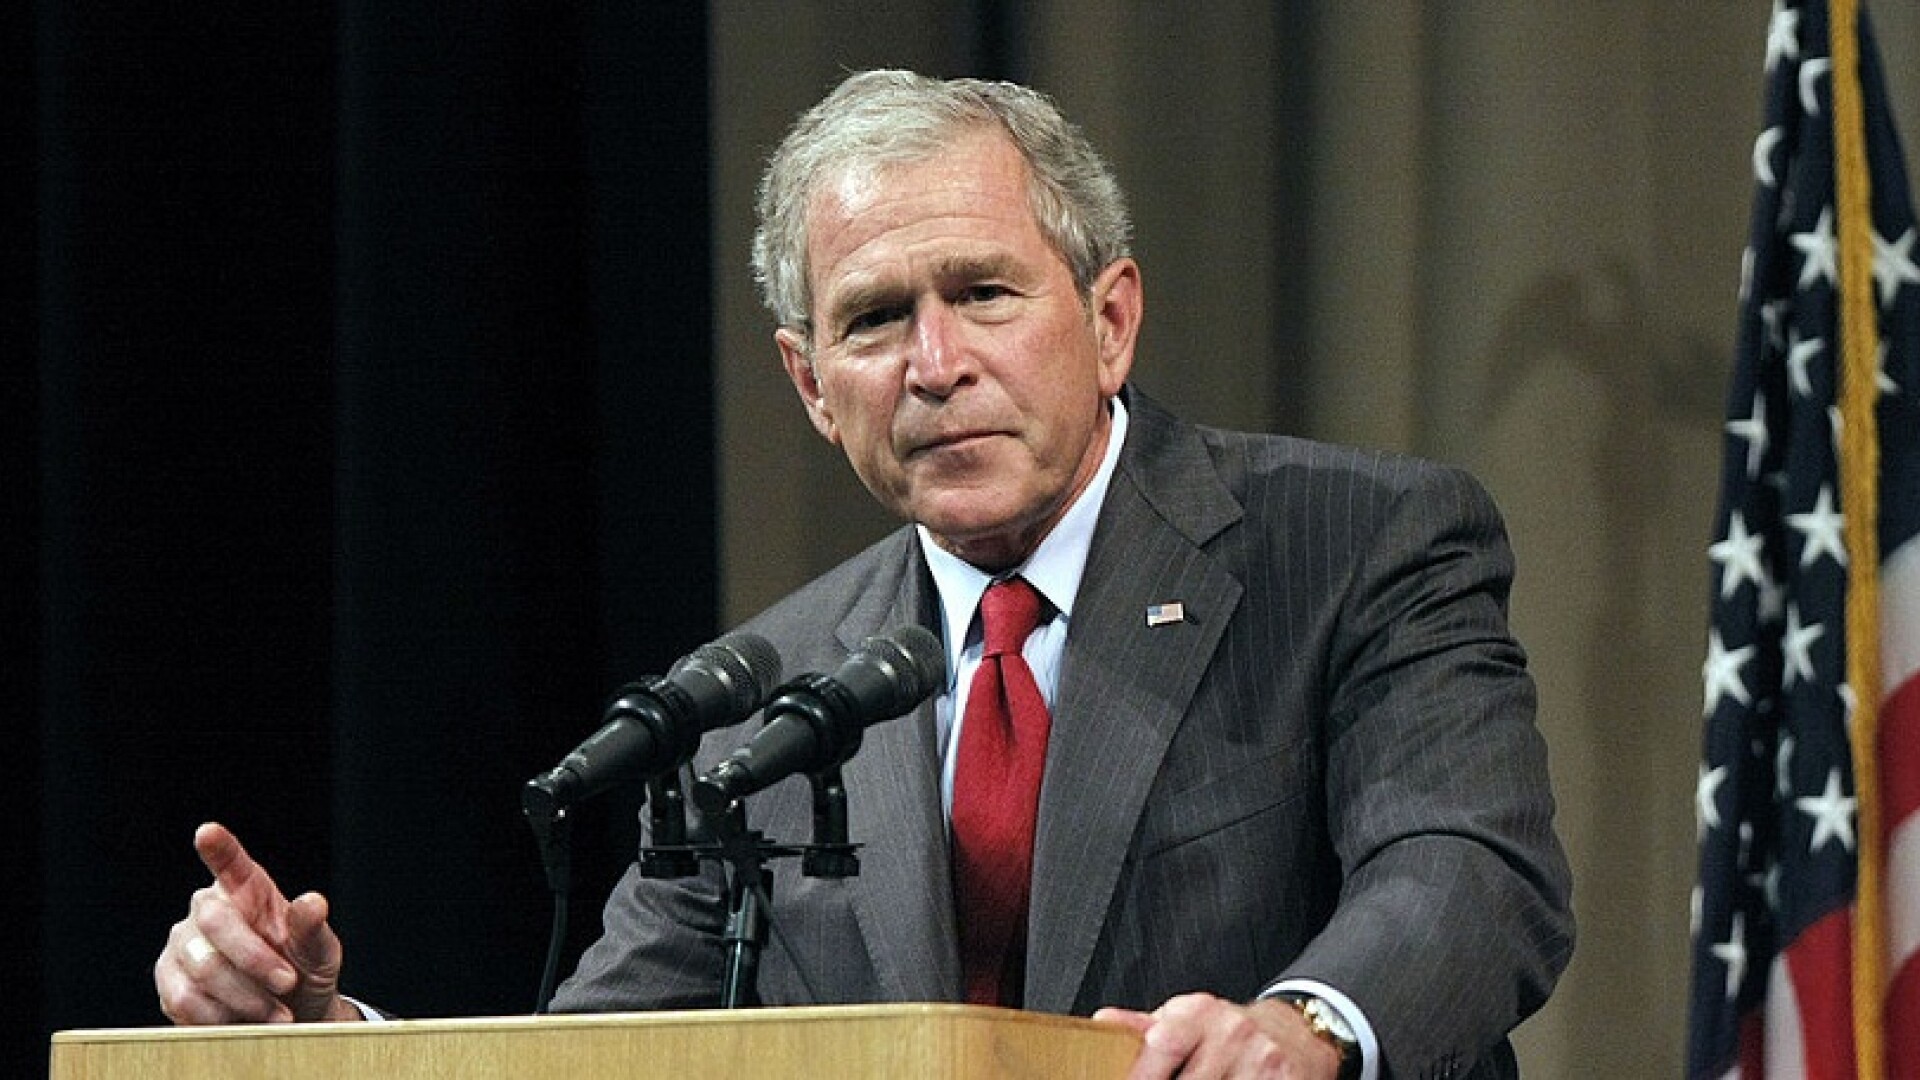 Sondaj: George W. Bush, considerat drept președintele SUA cu cea mai mare vină pentru rezultatul războiului din Afganistan